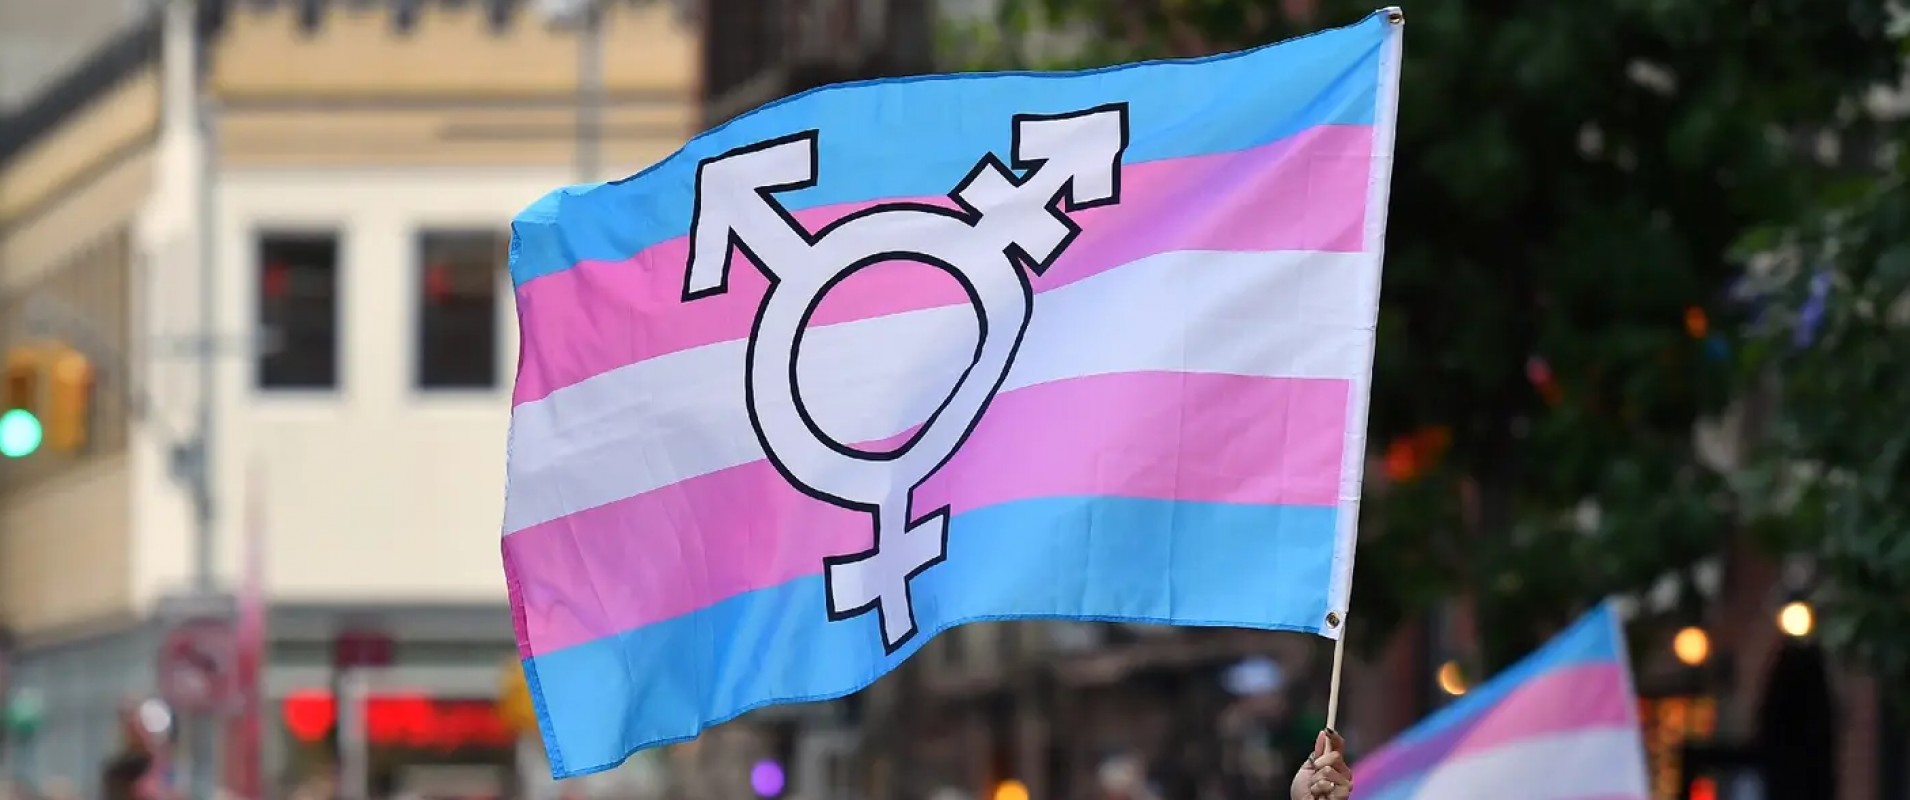 Seulement 39% Britanniques ont une image positive des personnes trans selon une récente étude